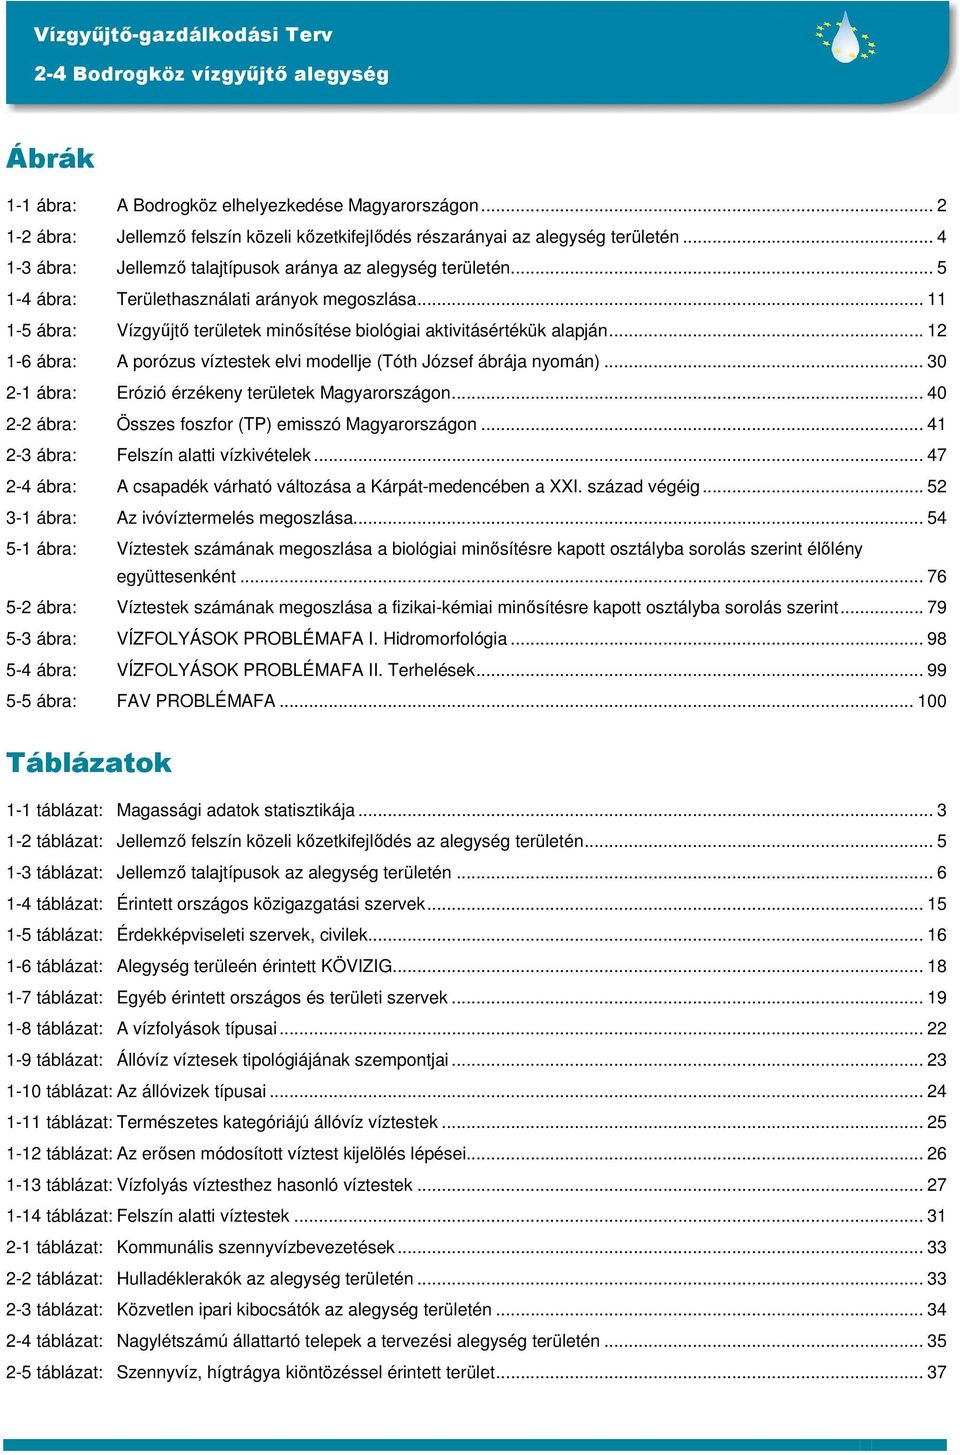 .. 12 1-6 ábra: A porózus víztestek elvi modellje (Tóth József ábrája nyomán)... 30 2-1 ábra: Erózió érzékeny területek Magyarországon... 40 2-2 ábra: Összes foszfor (TP) emisszó Magyarországon.